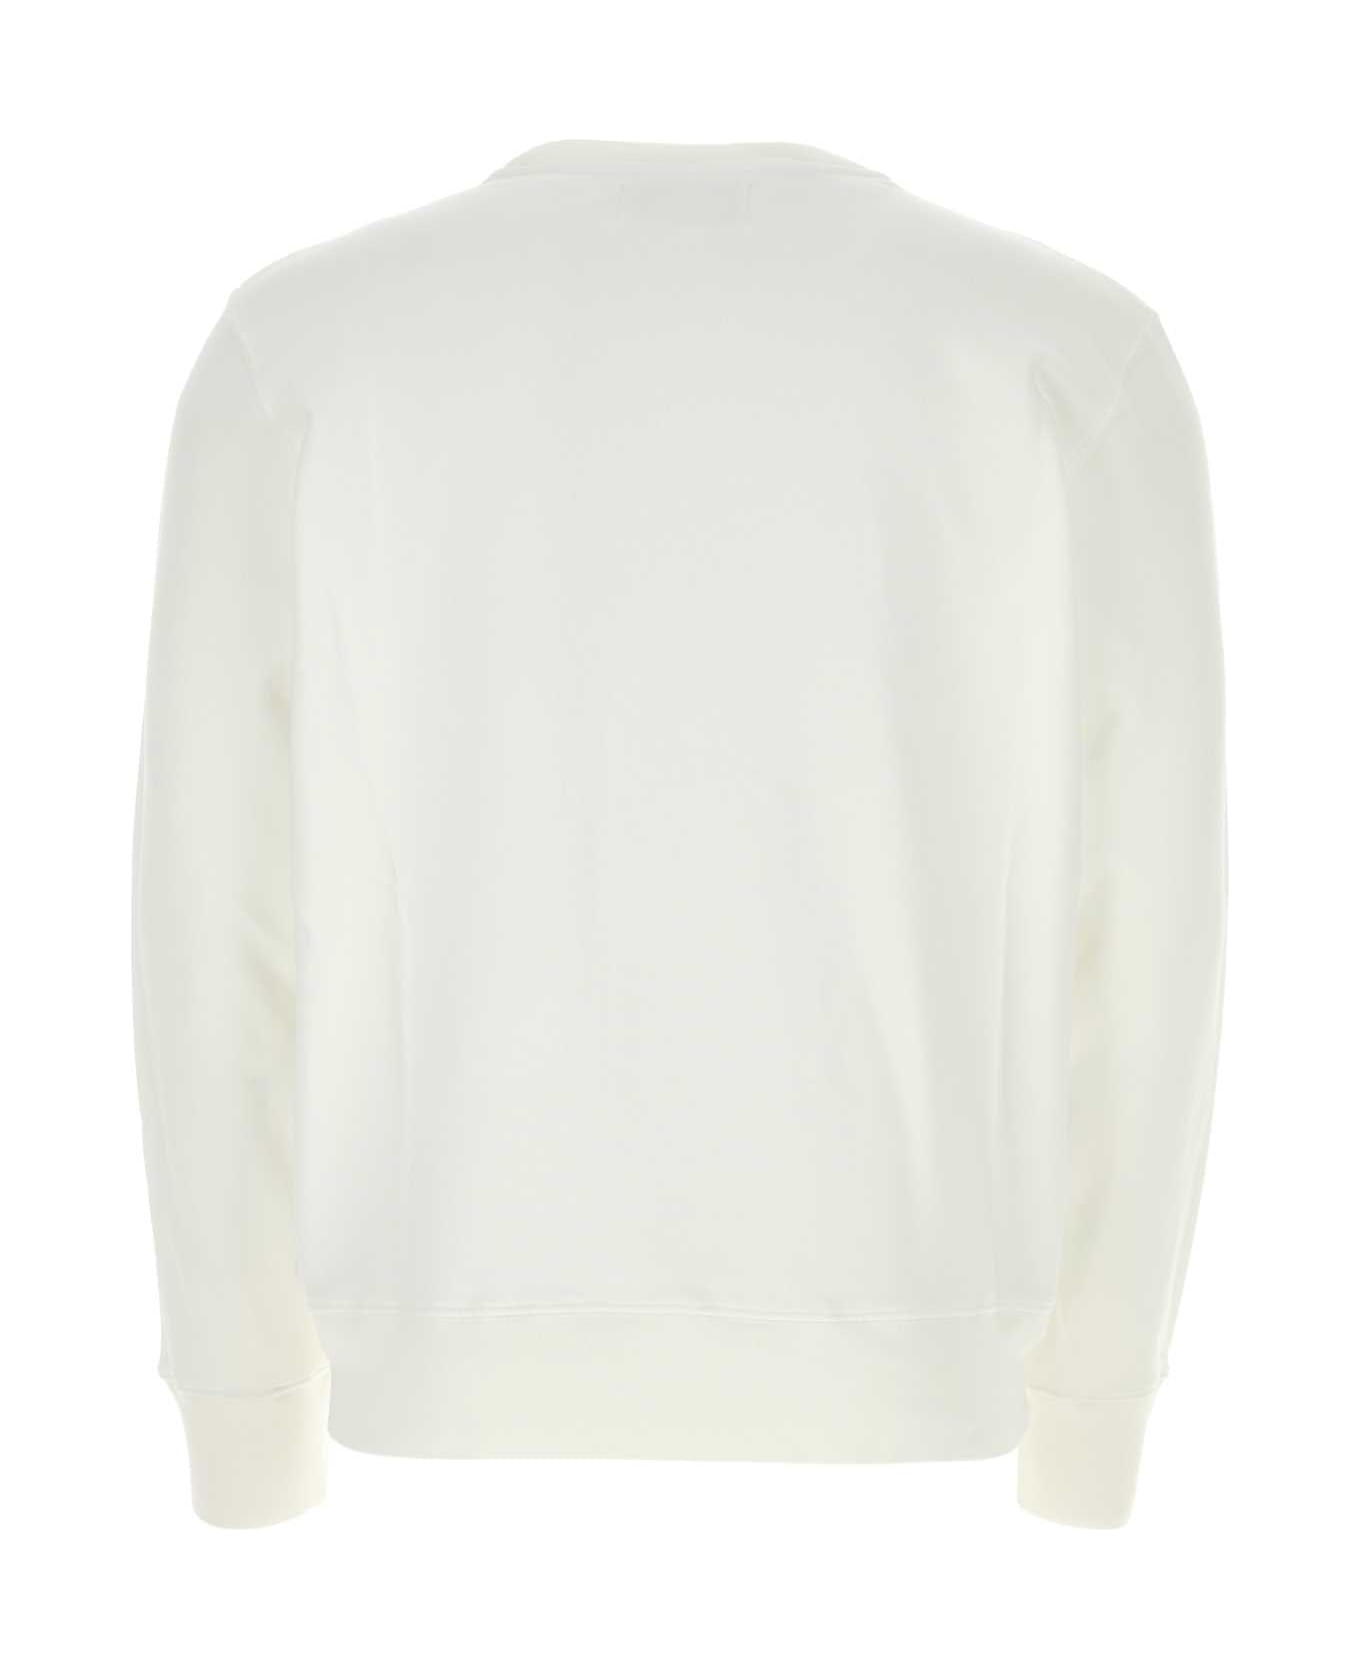 Autry White Cotton Sweatshirt - 507W